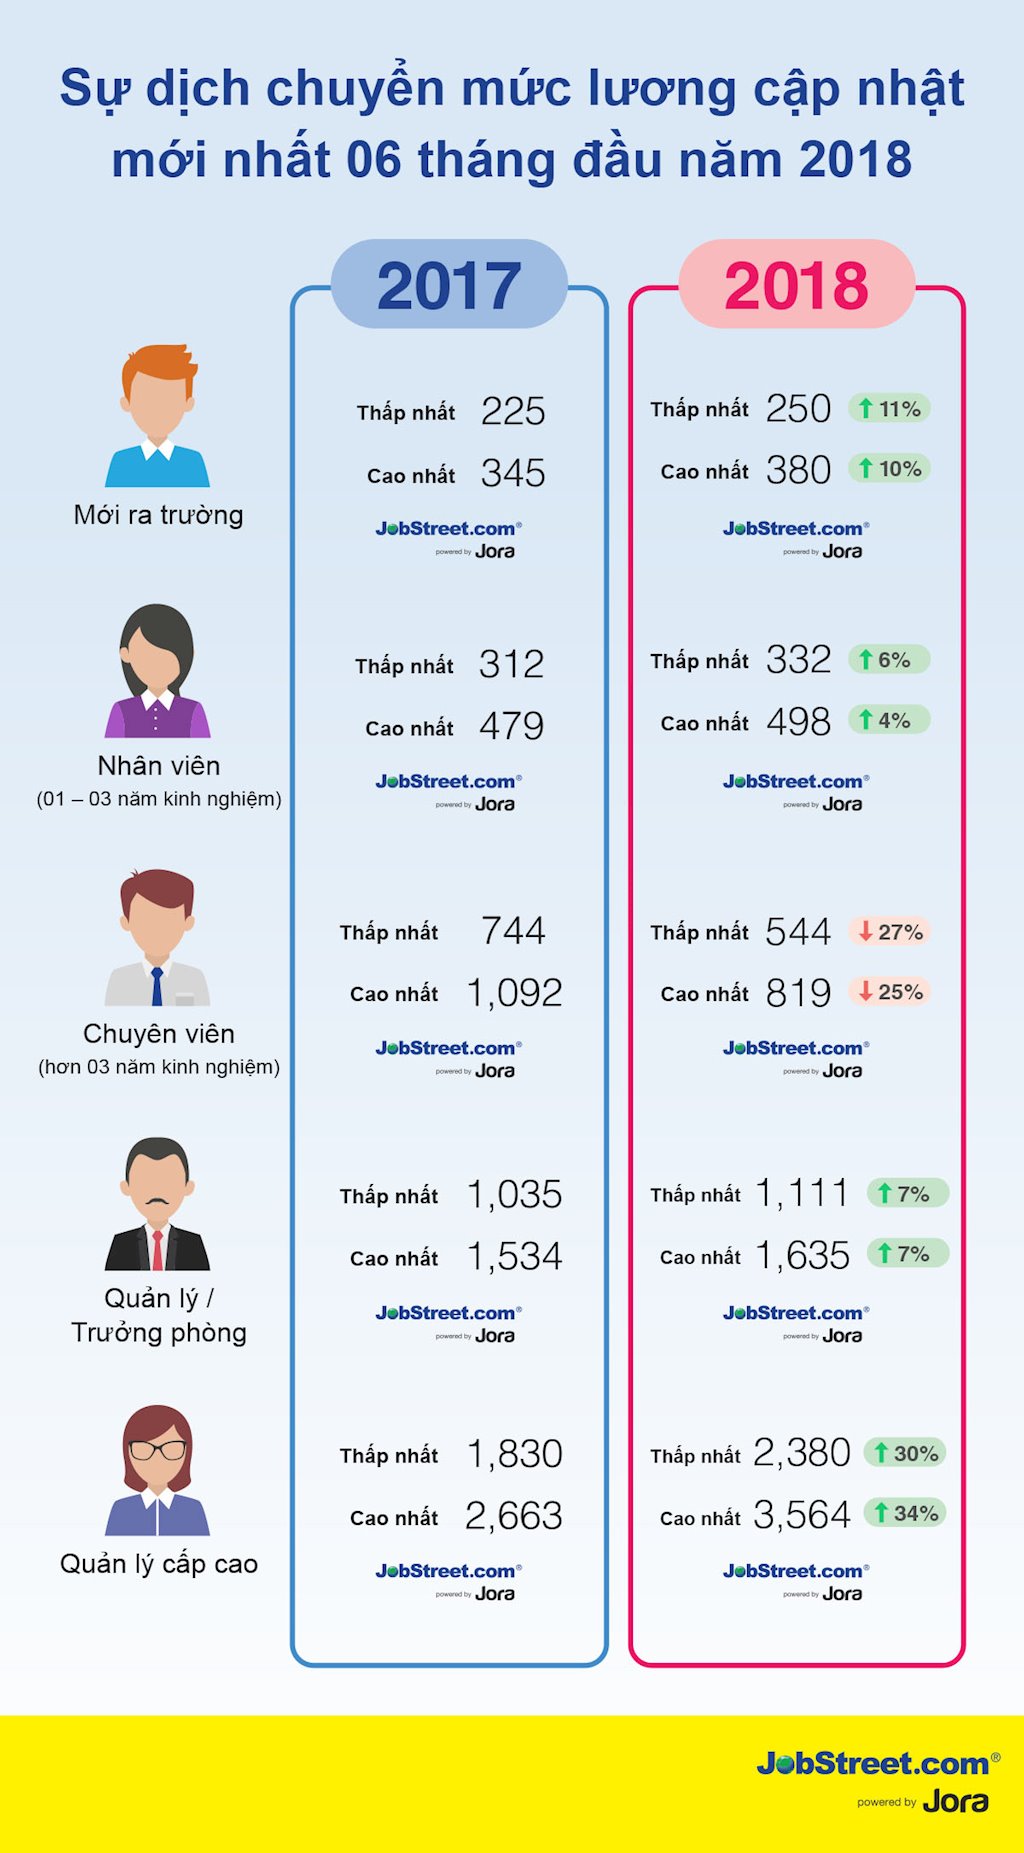 Lương nhân sự CNTT-Máy tính năm trong Top 3 ngành nghề có lương cao nhất | JobStreet.com Việt Nam công bố báo cáo lương 6 tháng đầu năm 2018 | JobStreet.com Việt Nam: CNTT-Máy tính nằm trong Top 3 ngành trả lương cao